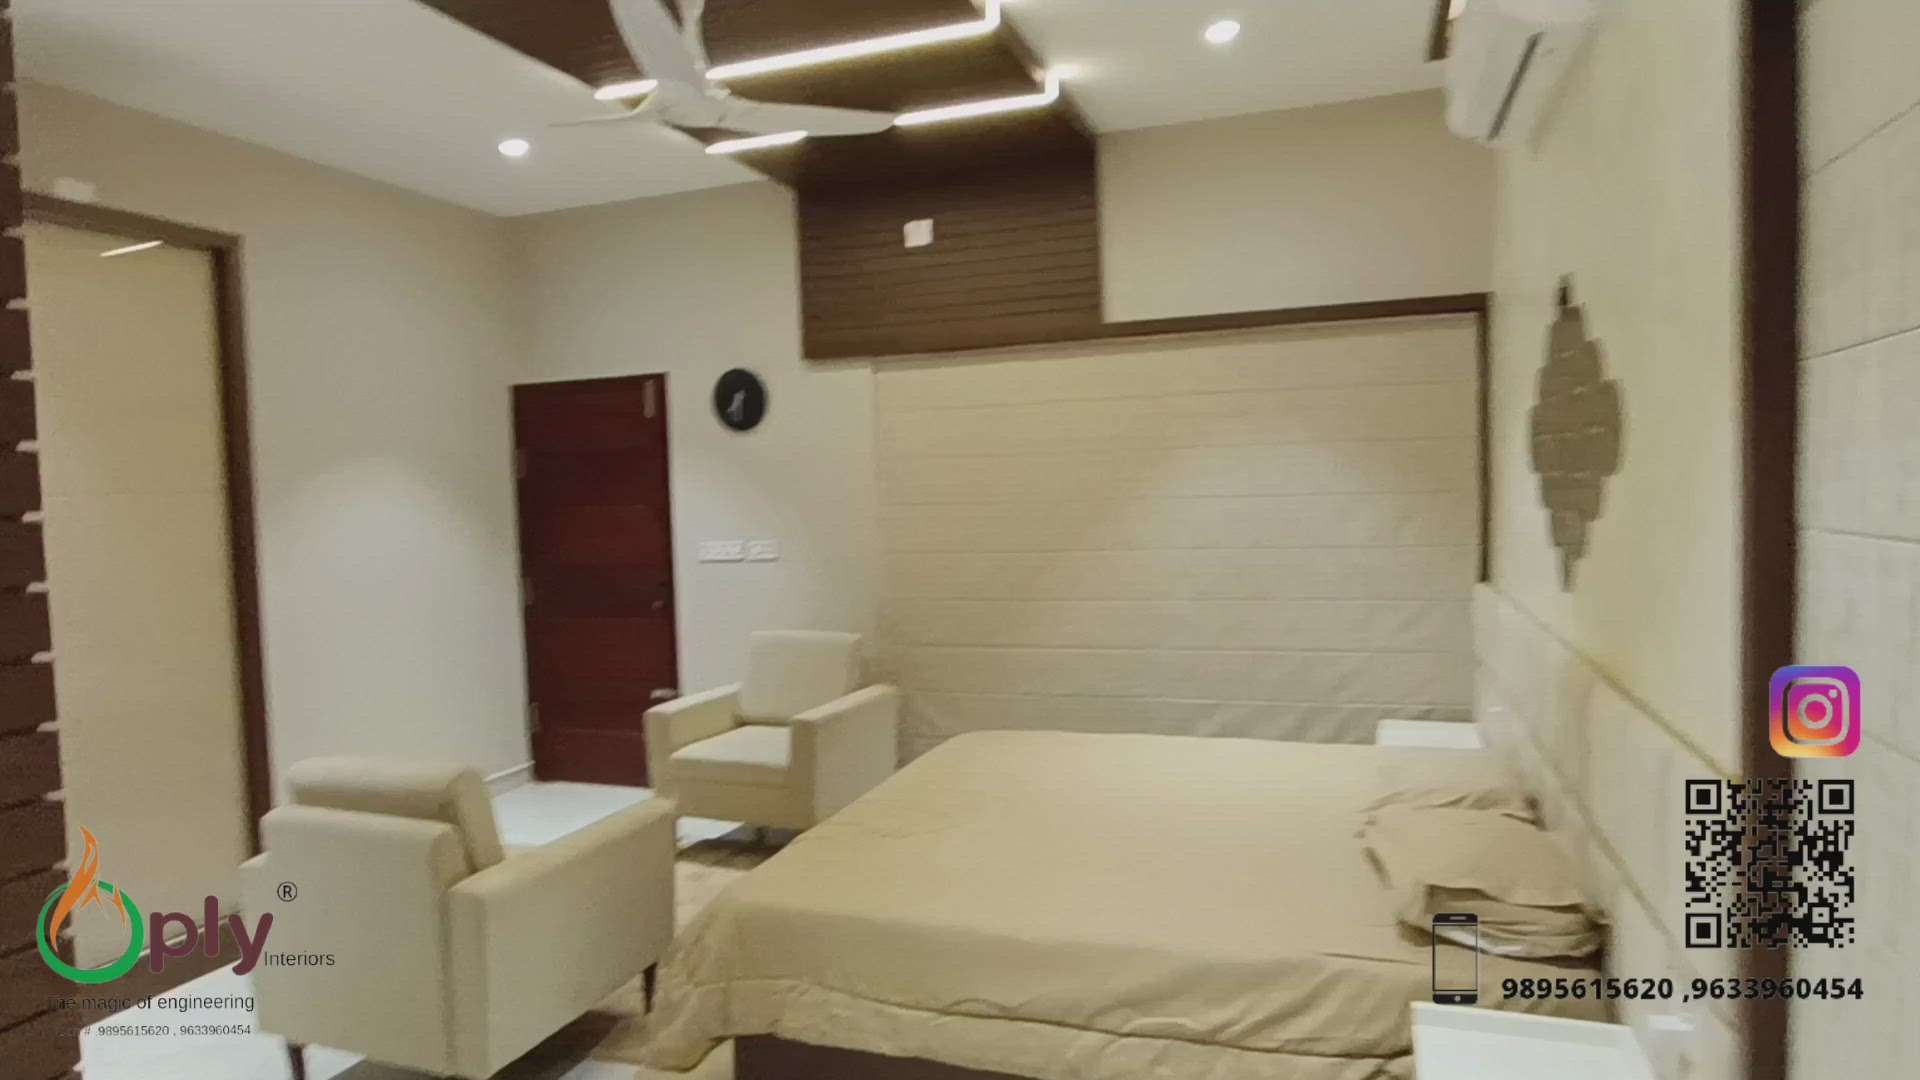 #BedroomDecor #MasterBedroom #KingsizeBedroom #BedroomDesigns #oplyinteriors #khusaikaliyath